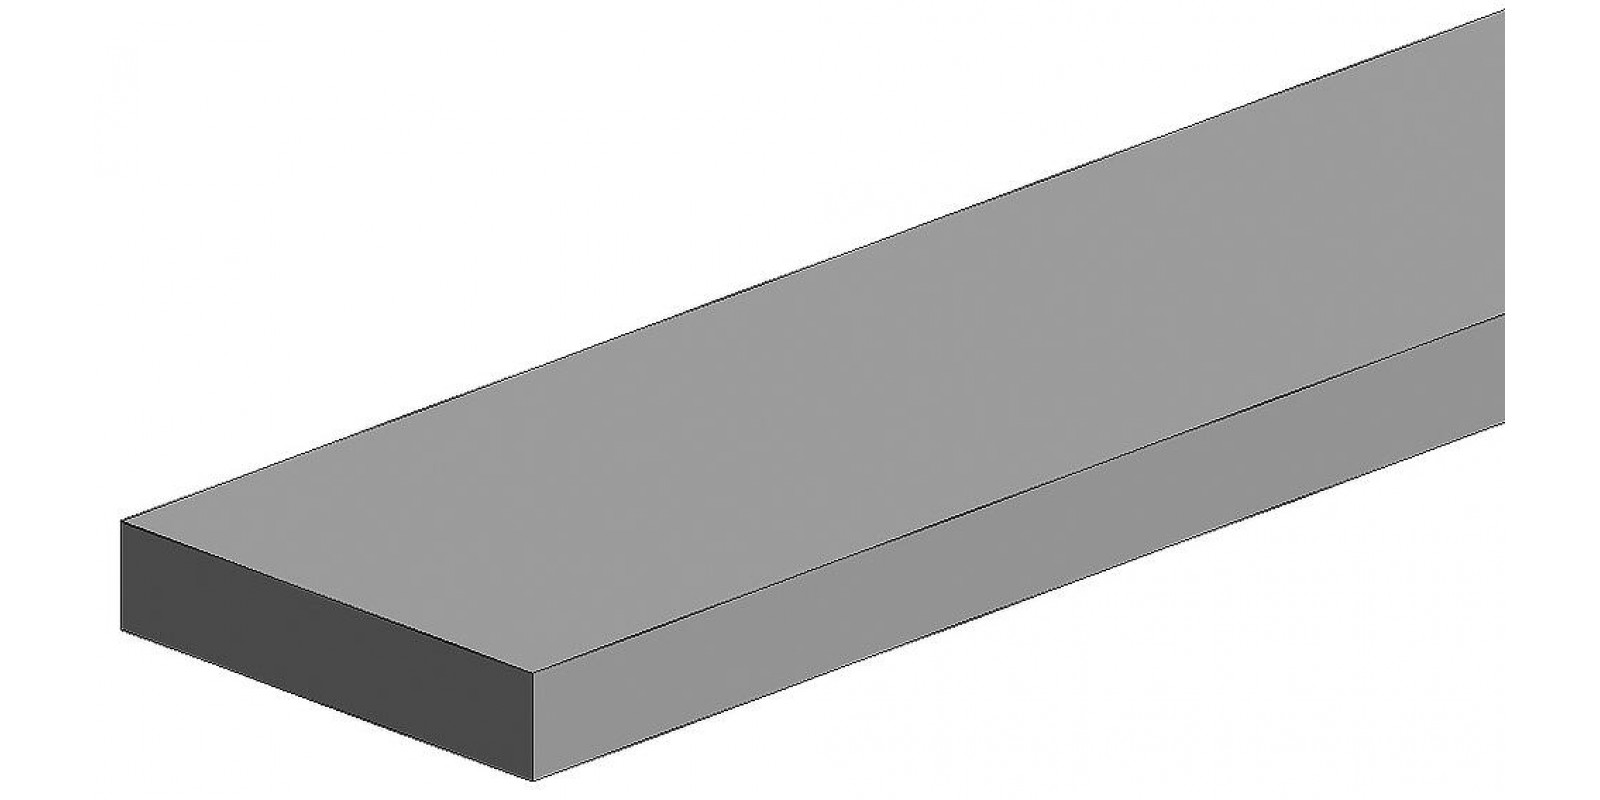 FA500166 White polystyrene square profile